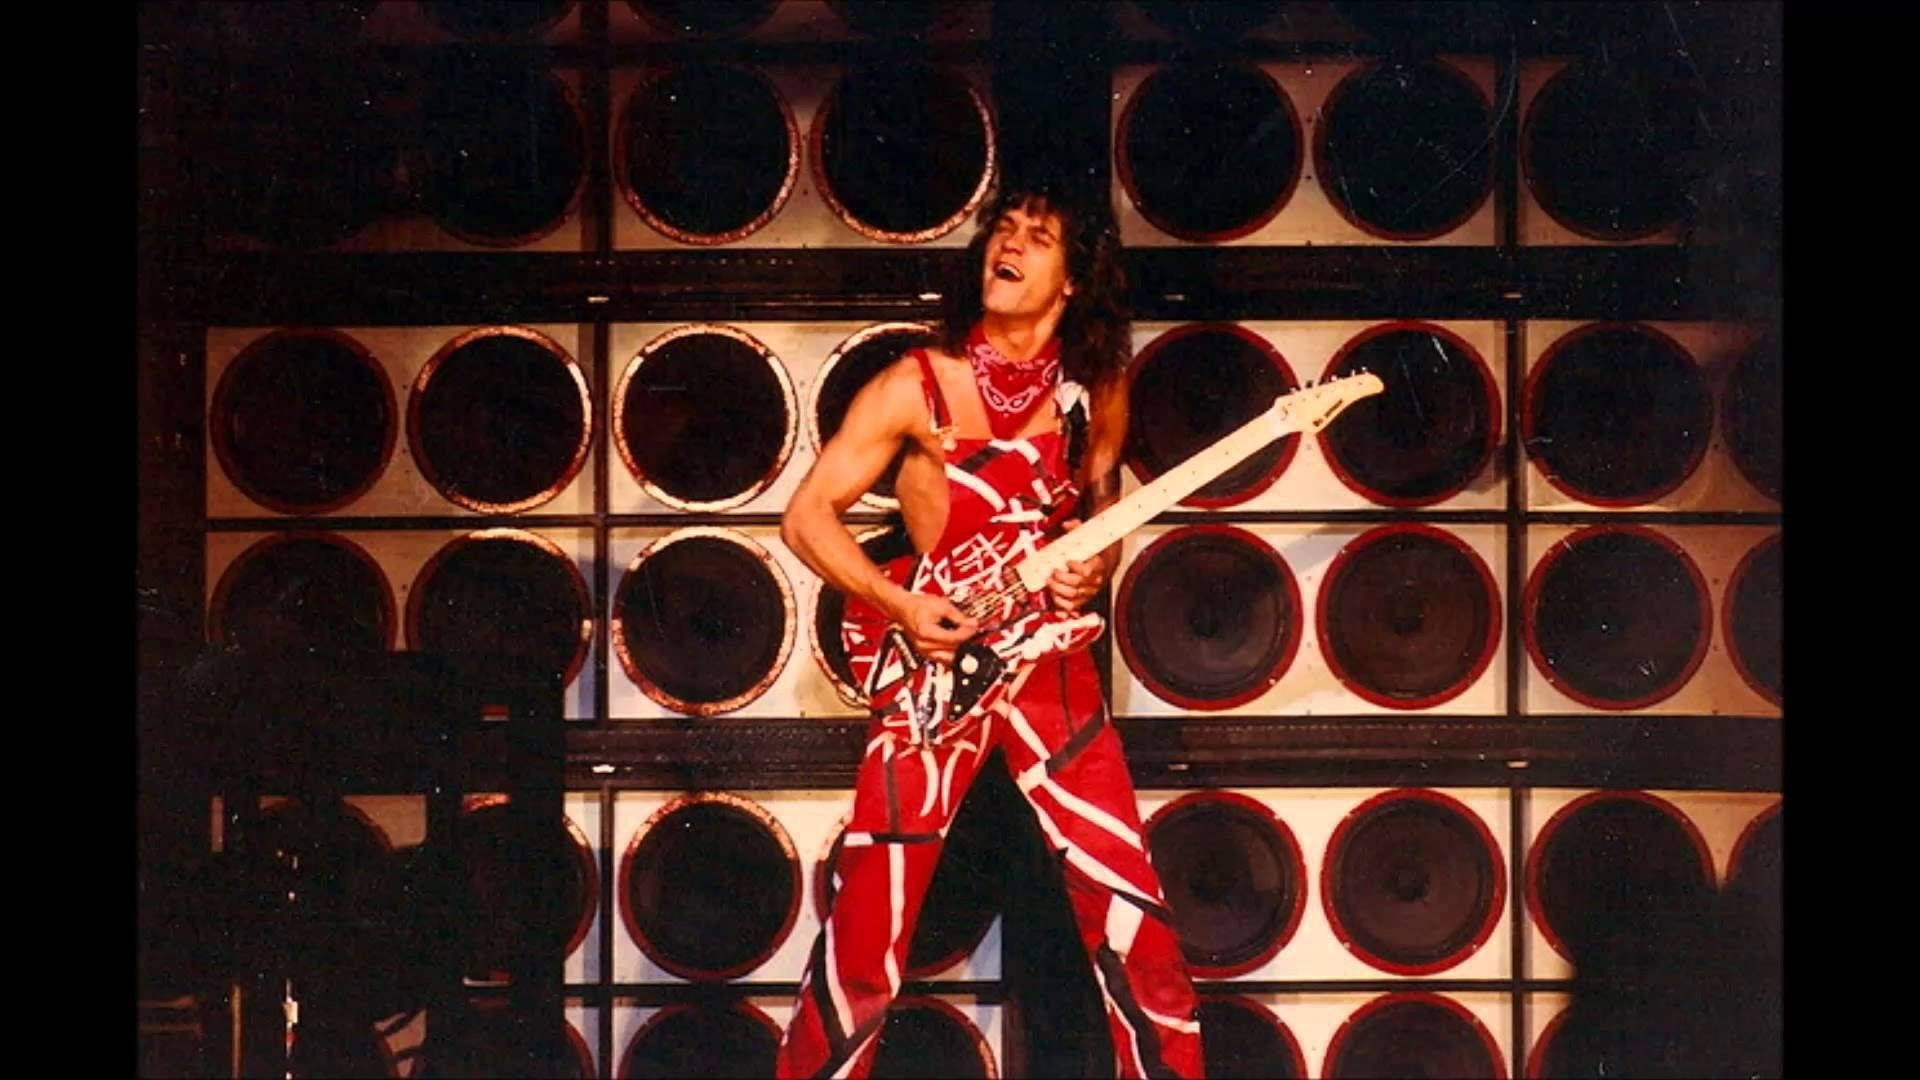 Caption: Eddie Van Halen Rocking On Stage Background